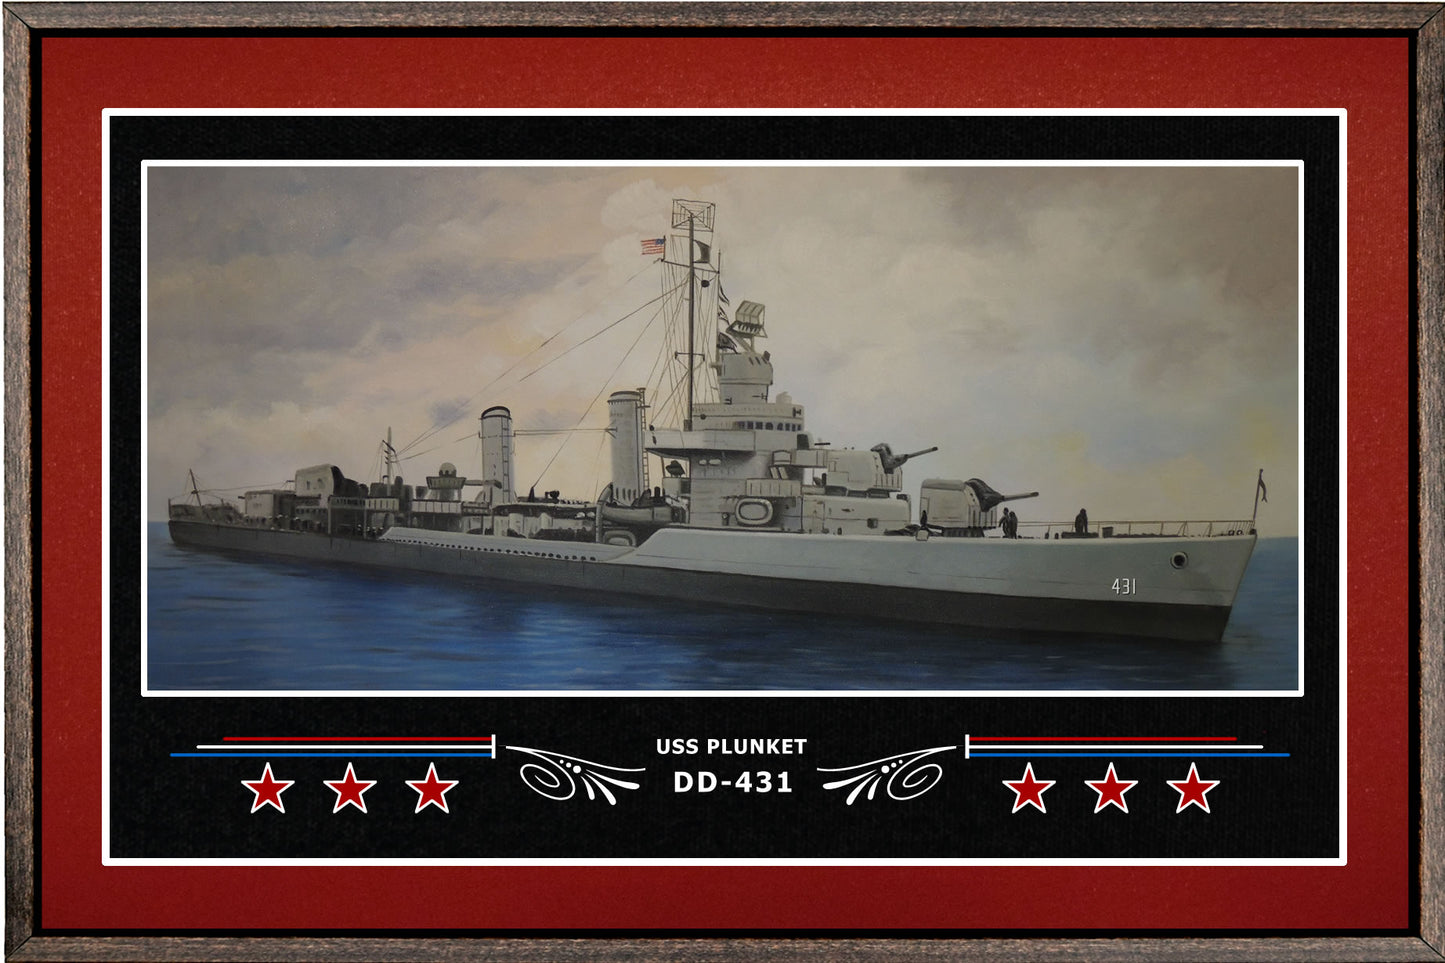 USS PLUNKET DD 431 BOX FRAMED CANVAS ART BURGUNDY